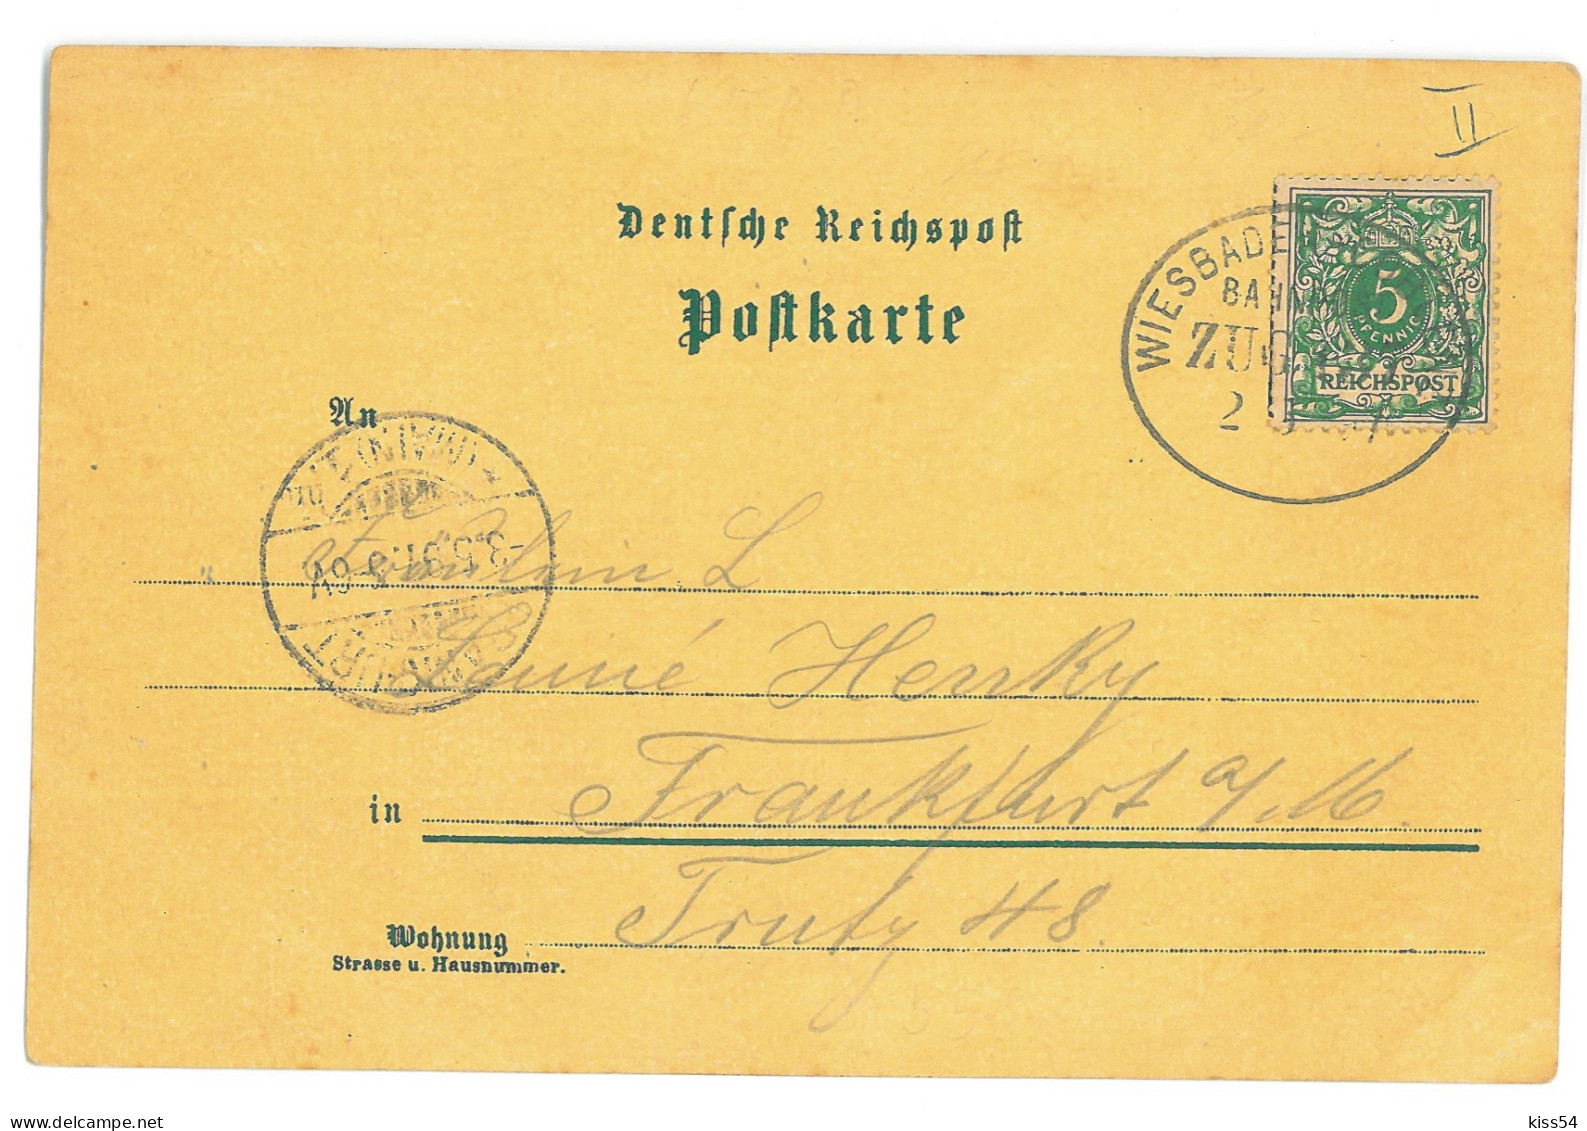 GER 56 - 17251 RHEIN, Litho, Germany - Old Postcard - Used - 1897 - Weil Am Rhein